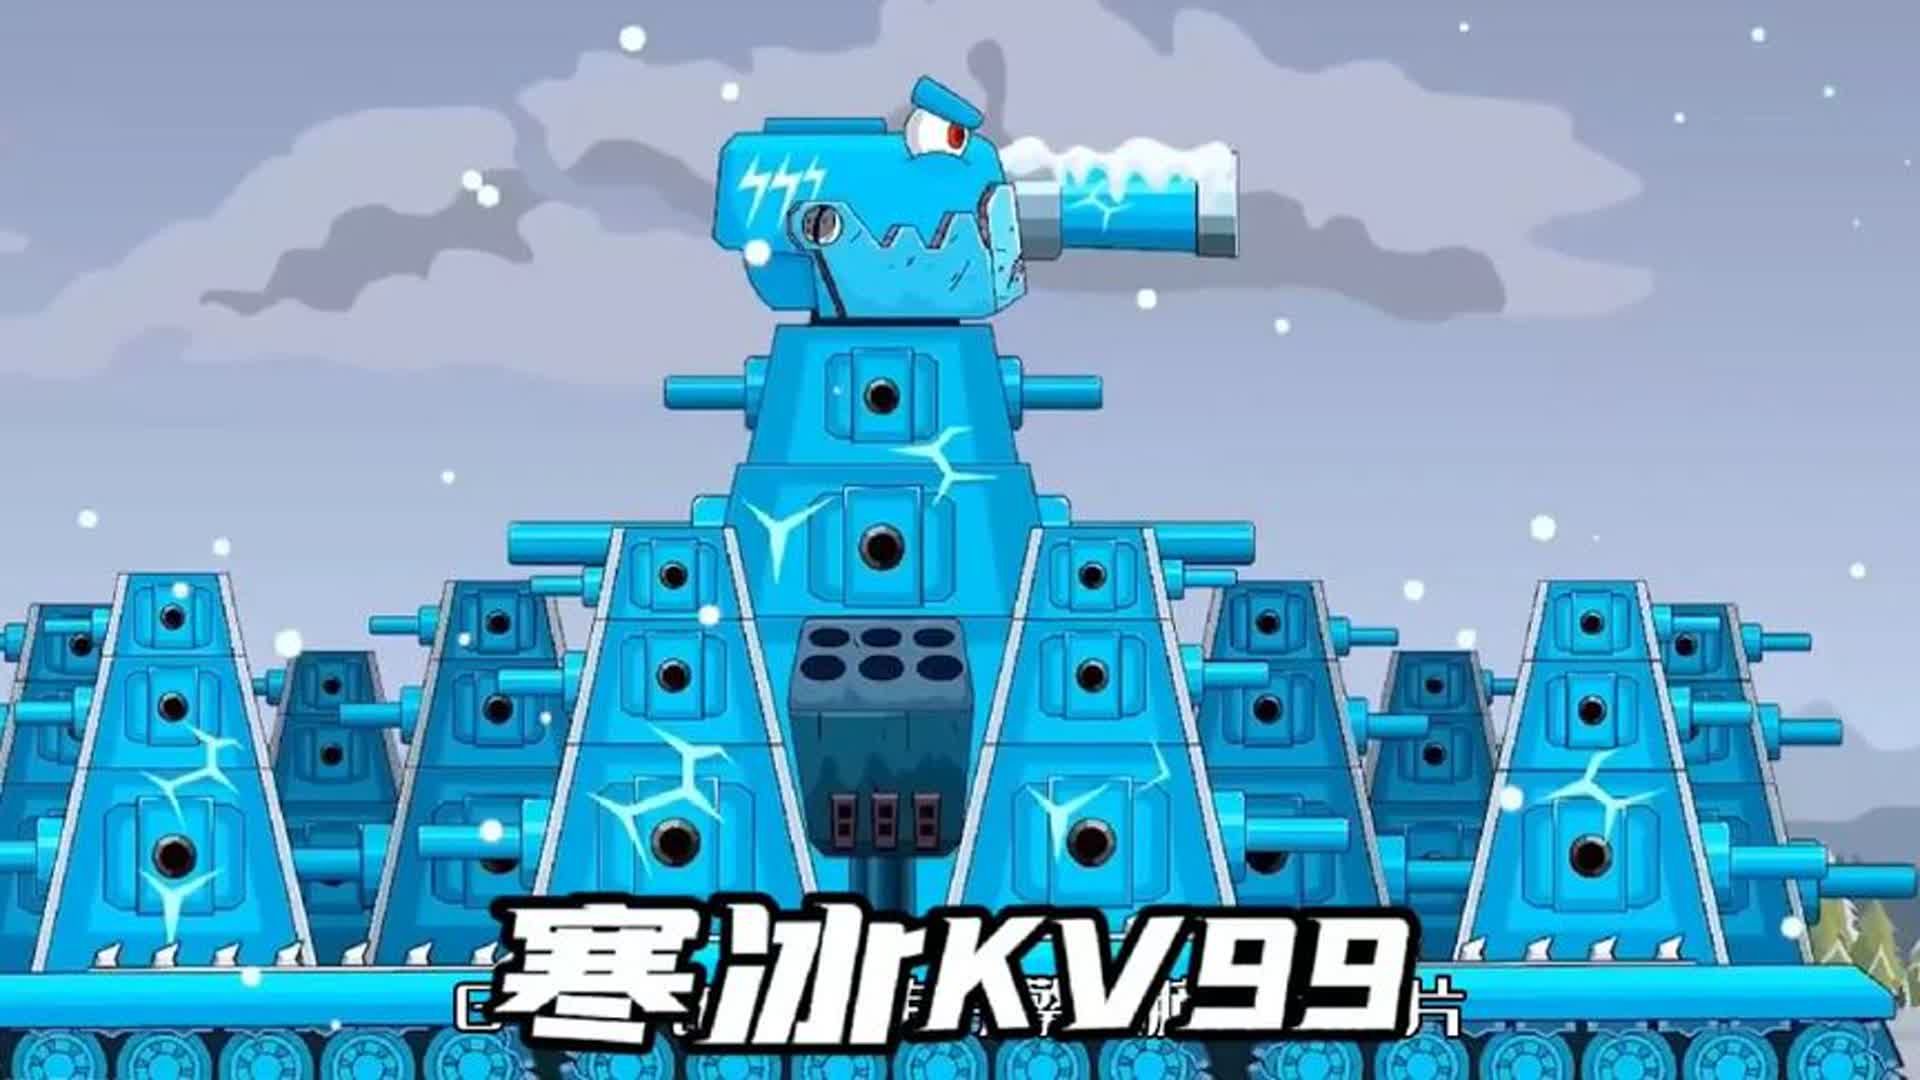 坦克世界动画:寒冰kv99大战gt99!